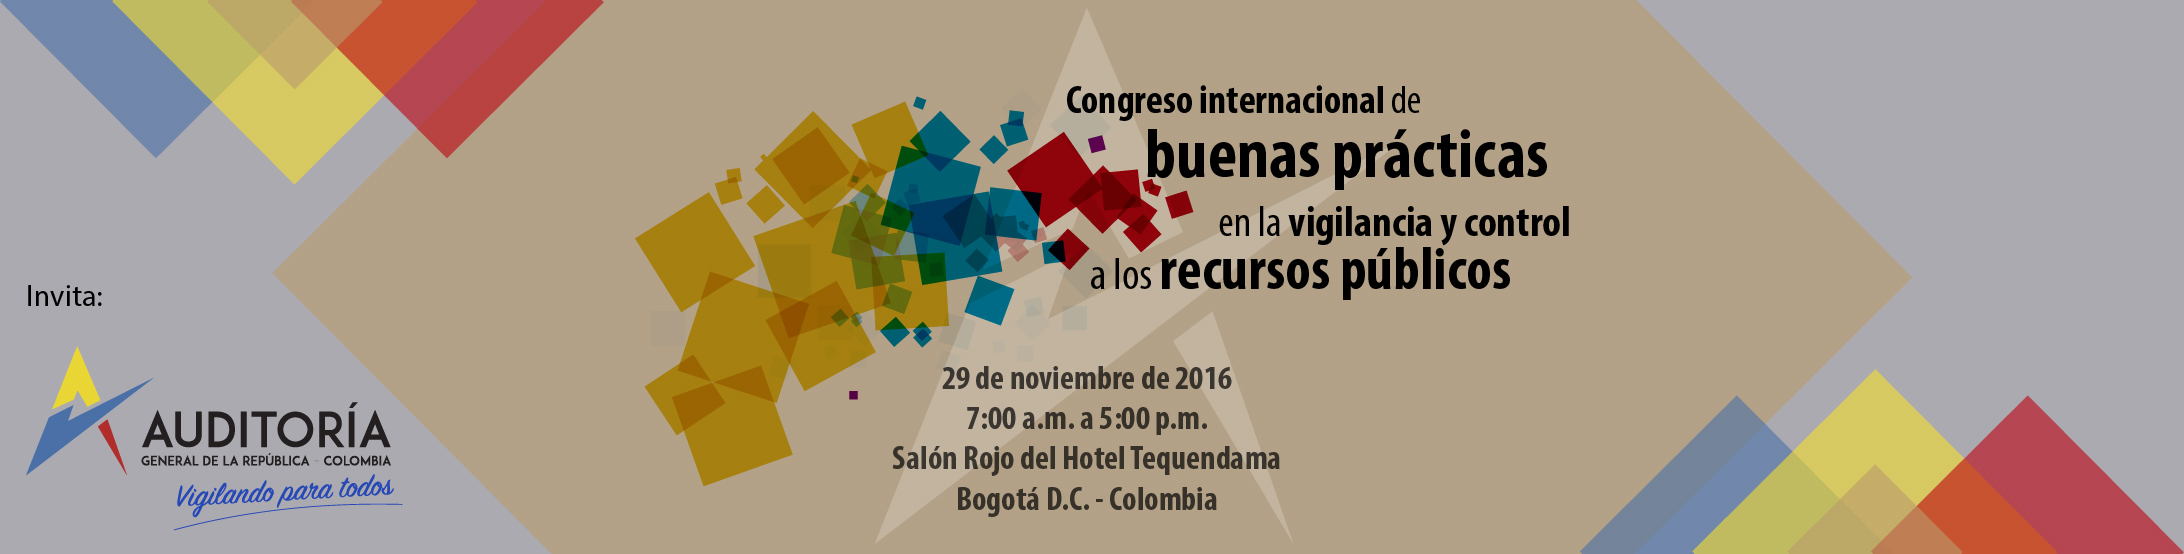  Congreso internacional de buenas prácticas en la vigilancia y control a los recursos públicos